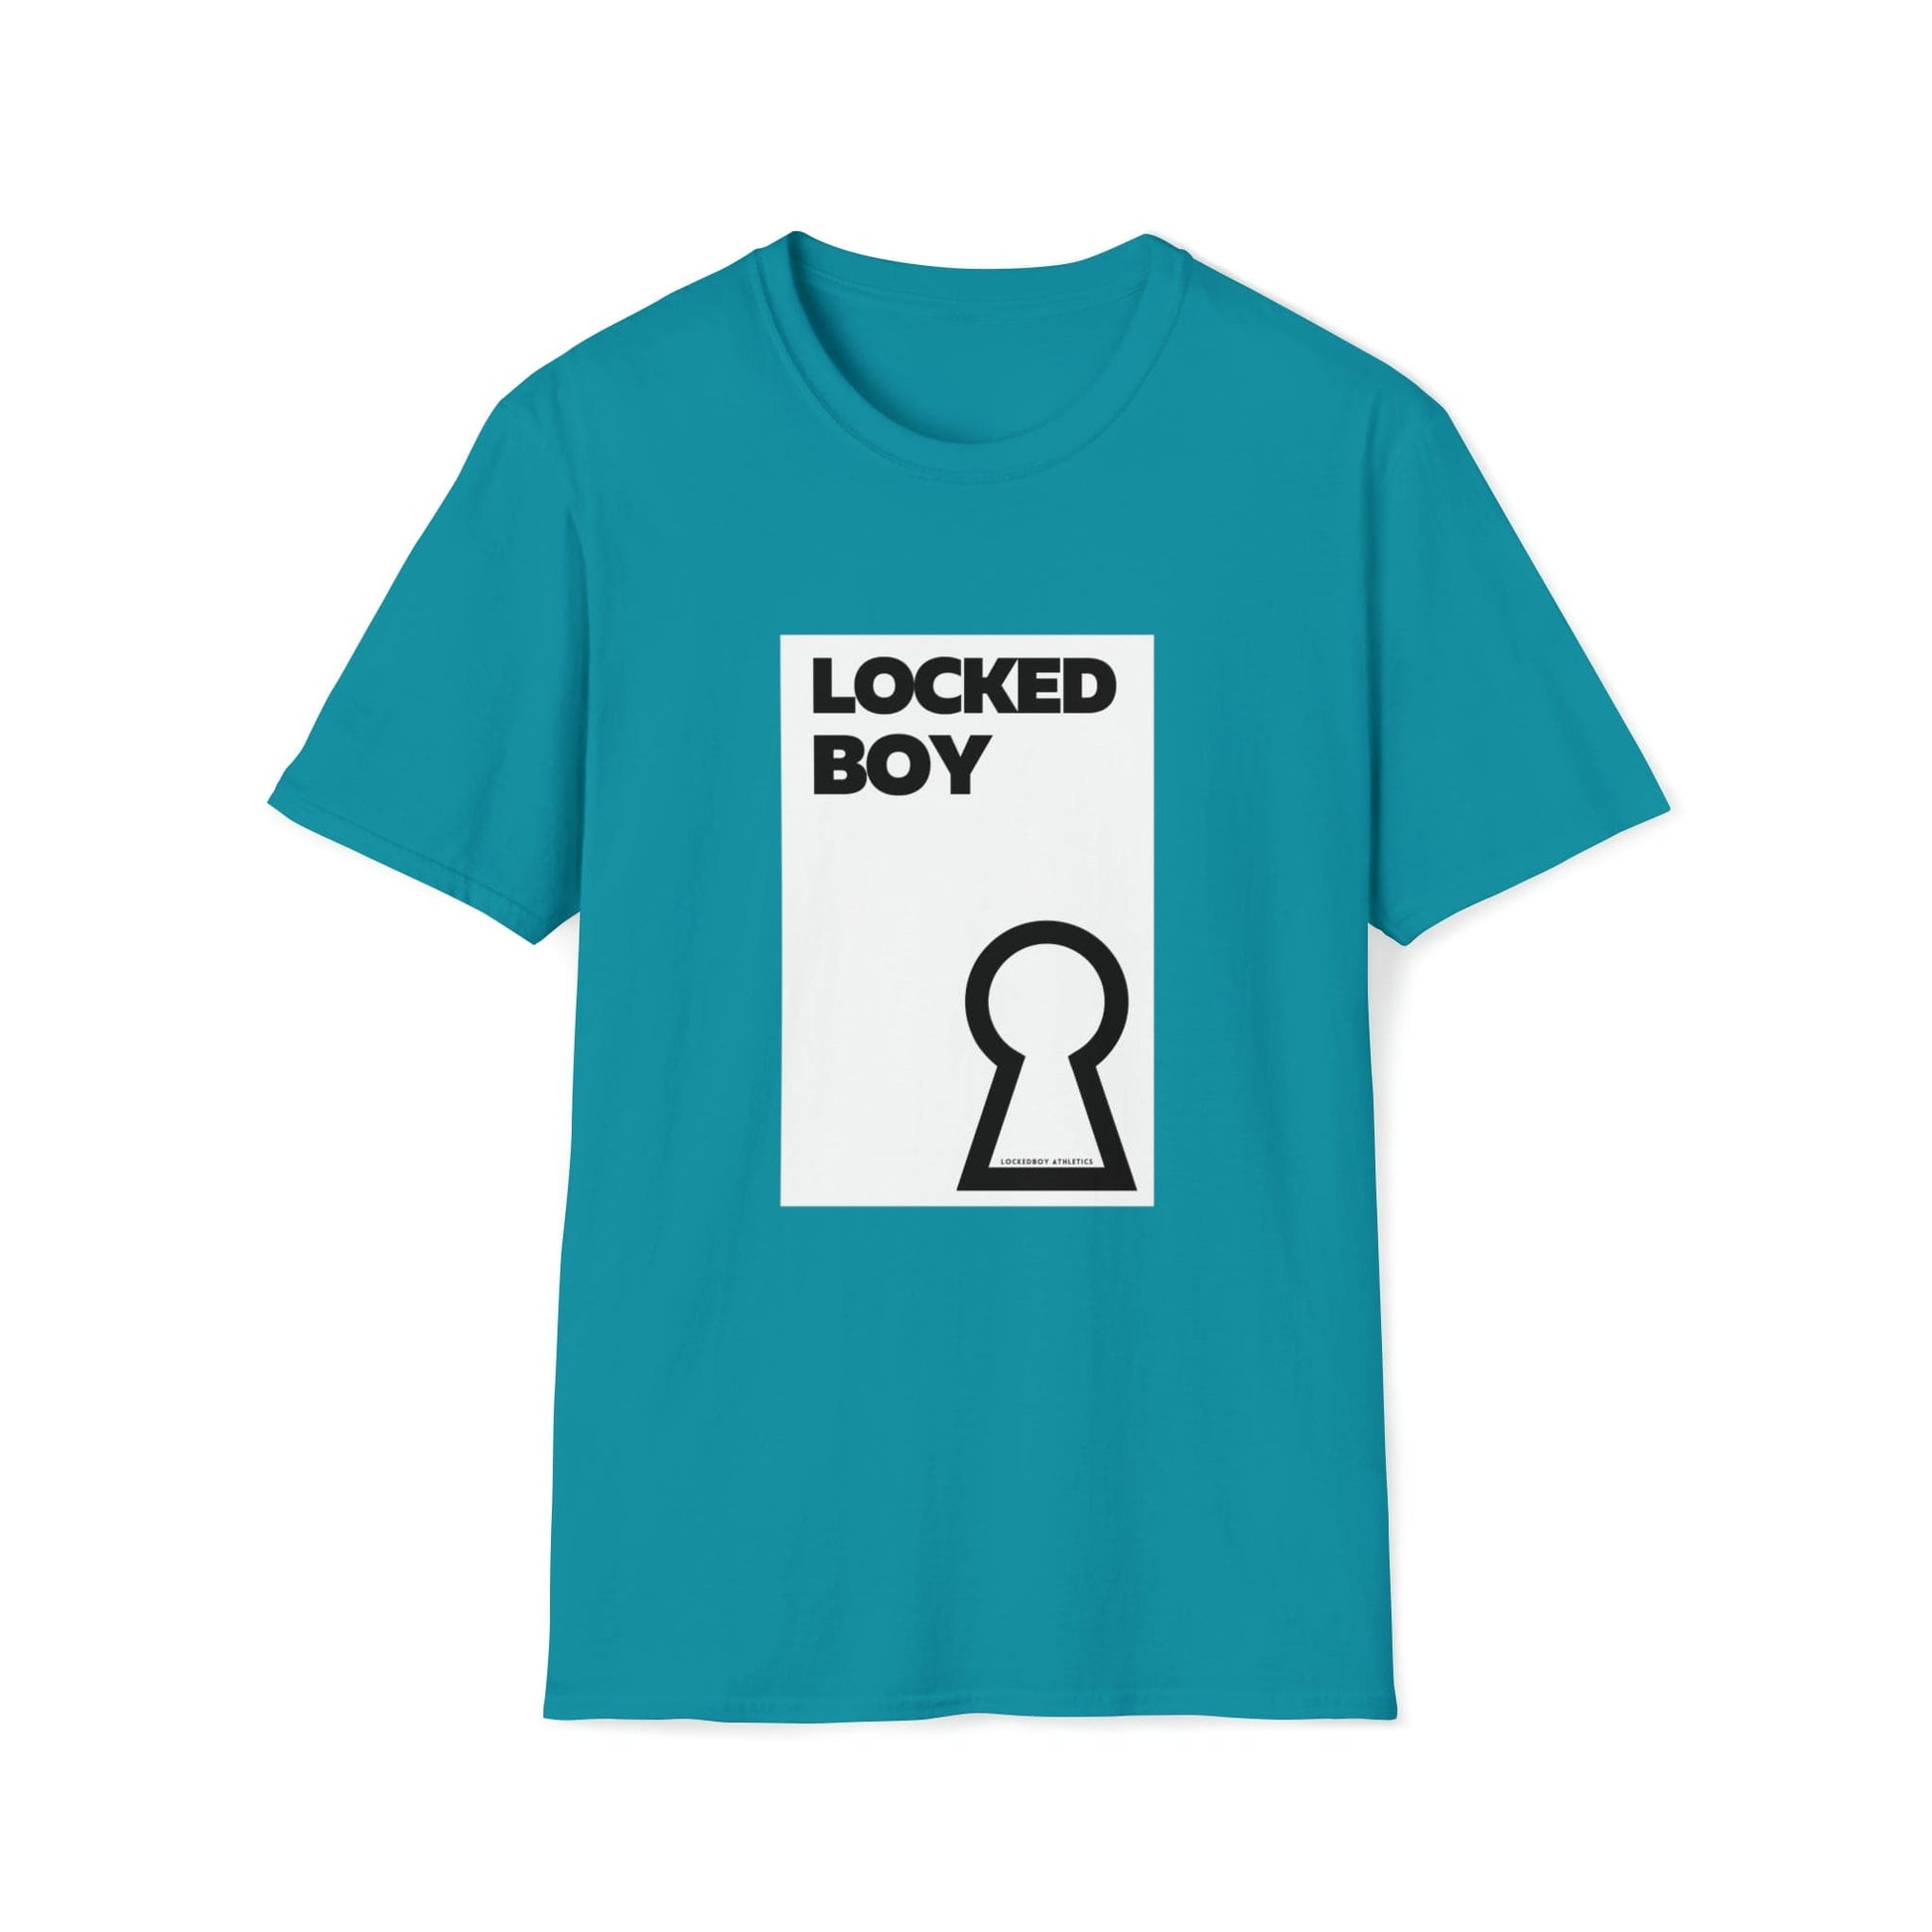 T-Shirt Tropical Blue / S LockedBoy OG - Lockedboy Athletics Chastity Tshirt LEATHERDADDY BATOR